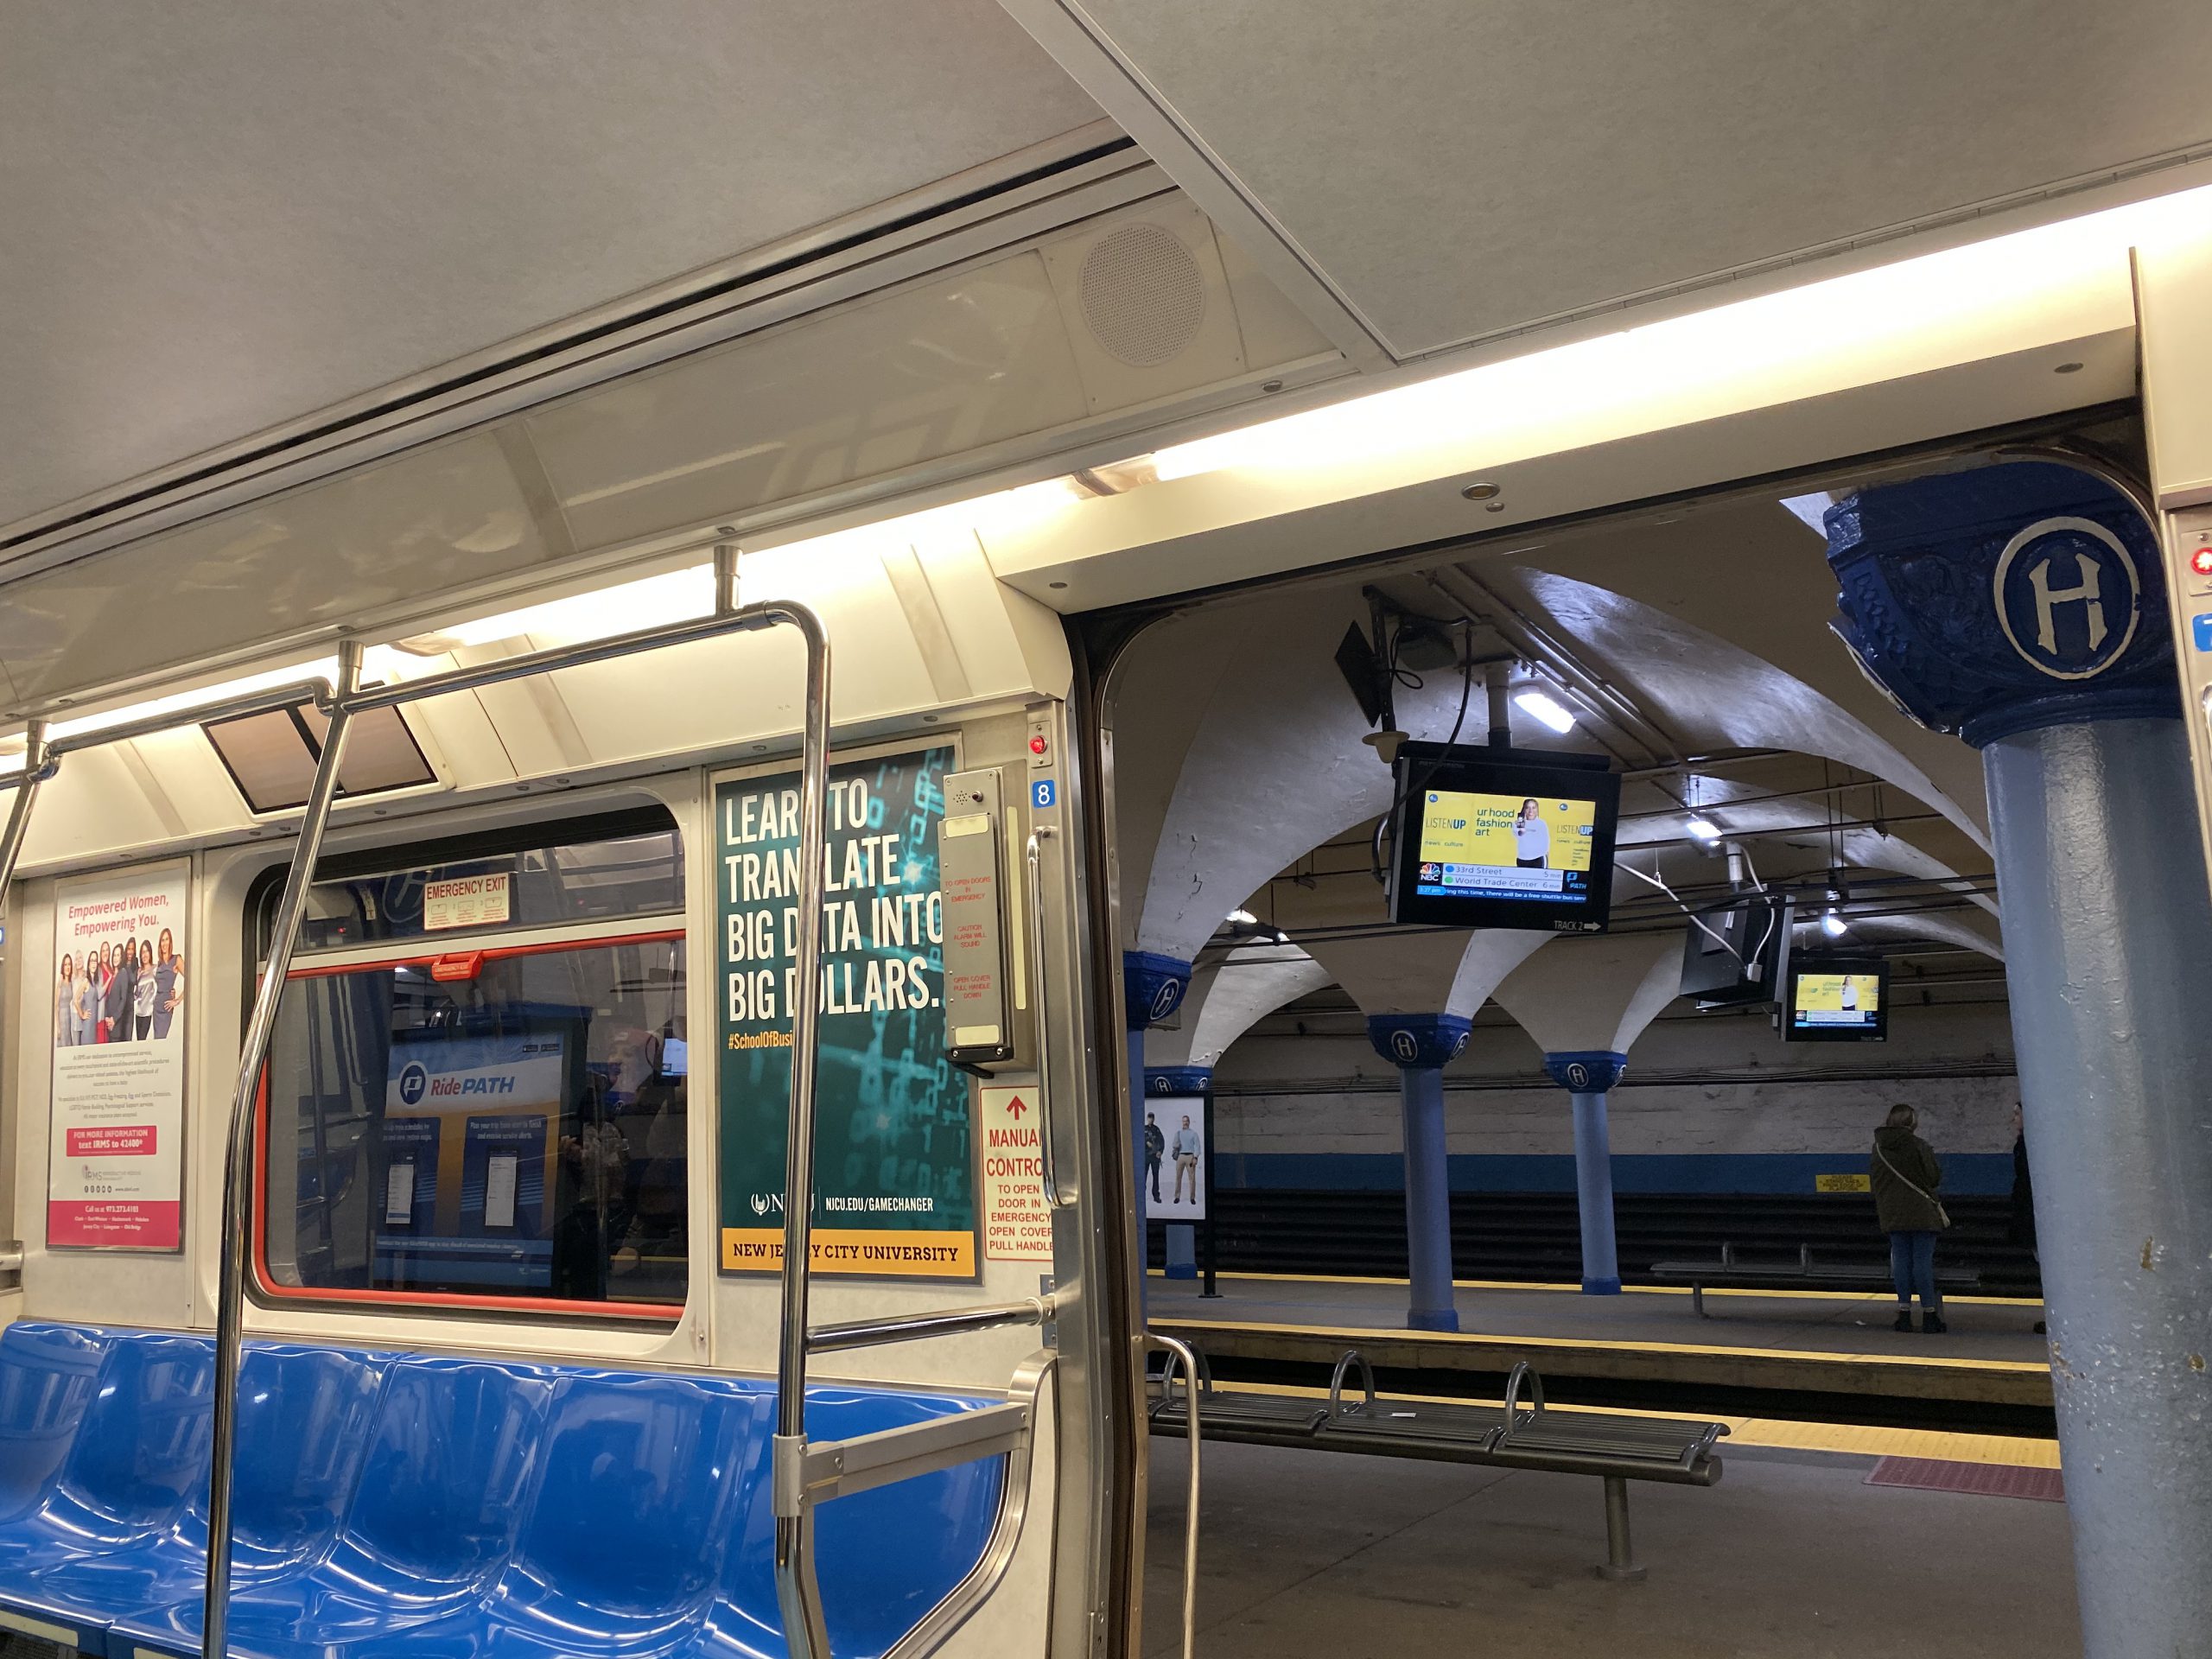 ニューヨーク Ny 地下鉄電車乗り方や便利なアプリをまとめました コト旅